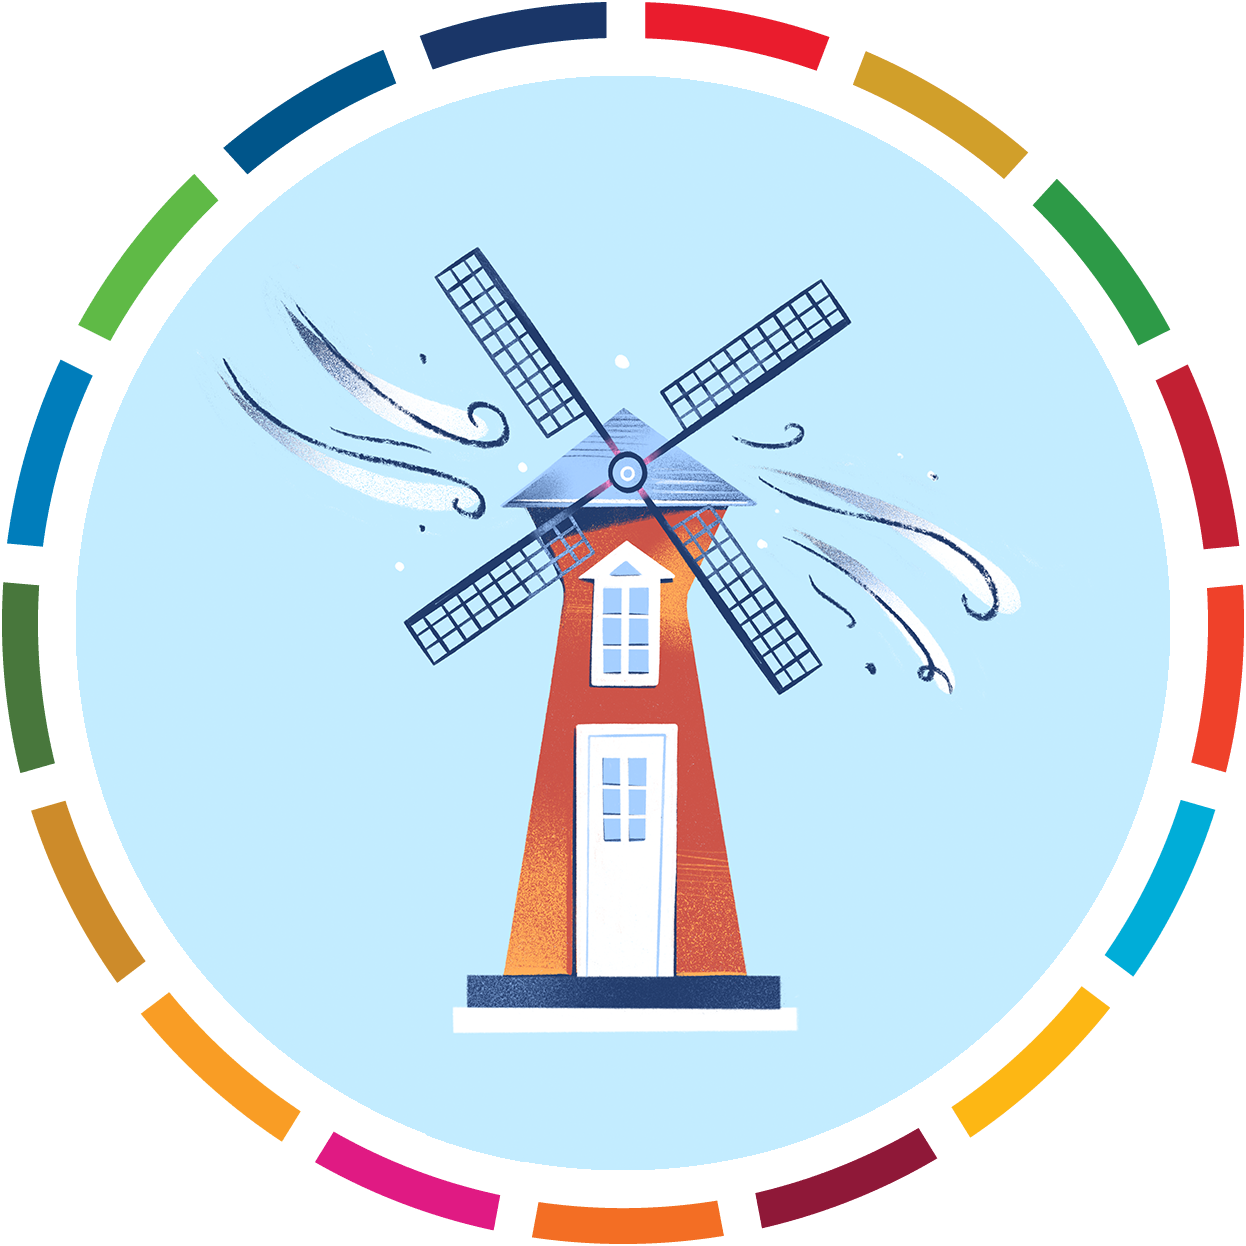 Icône représentant une maison équipée d'une éolienne